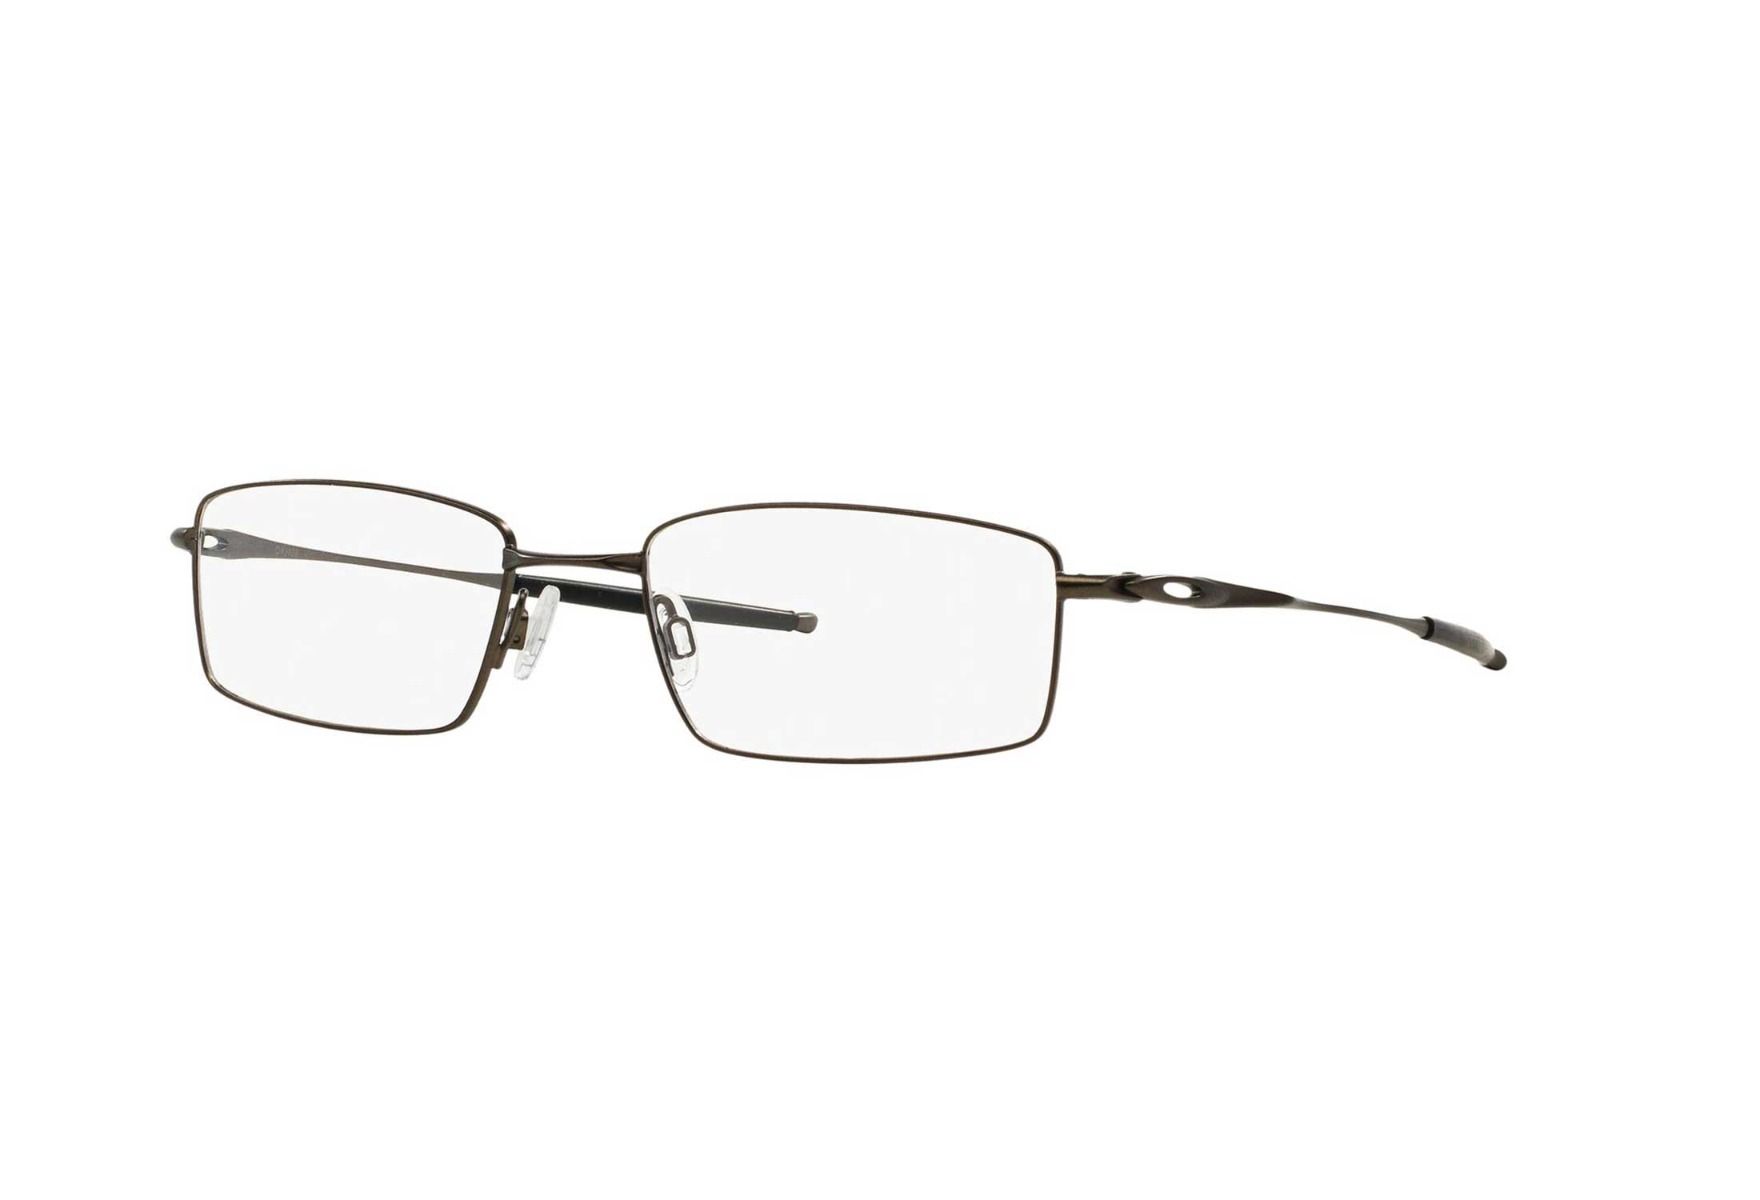 Oakley briller - Top Spinner 4b - Metall, Large Hel ramme i Metall - Rektangulære